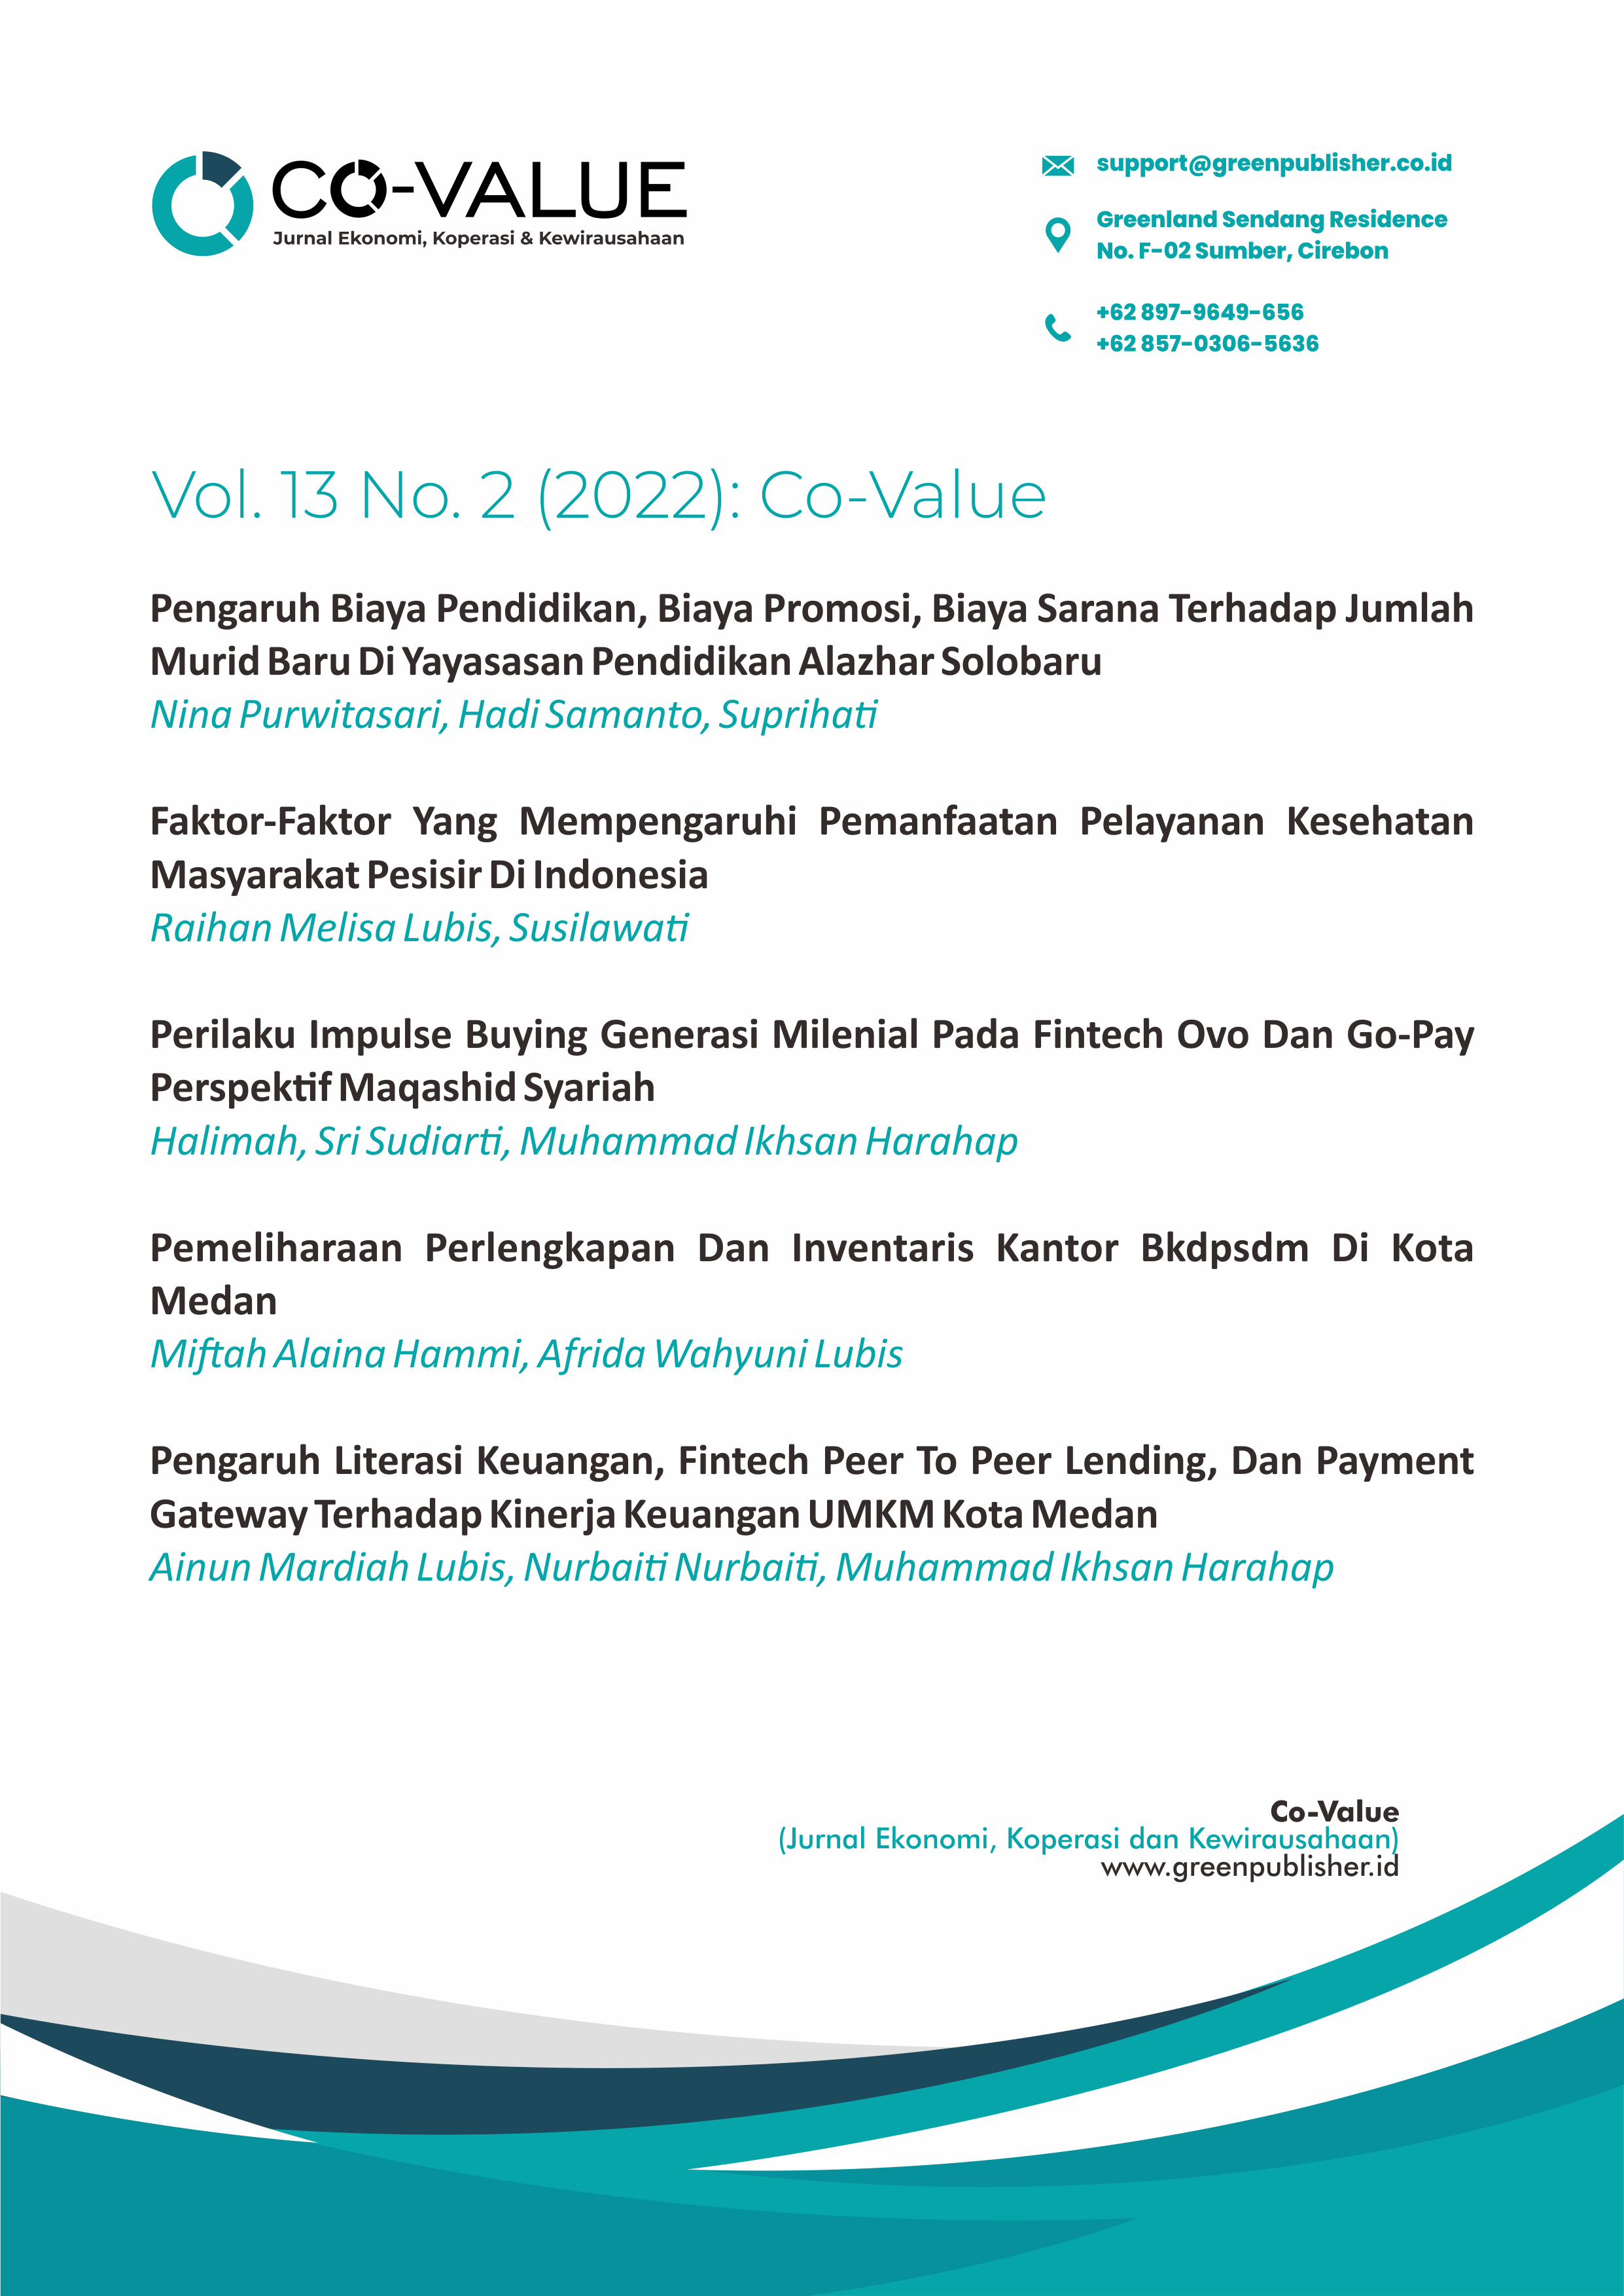 					View Vol. 13 No. 2 (2022): Co-Value : Jurnal Ekonomi, Koperasi, & Kewirausahaan
				